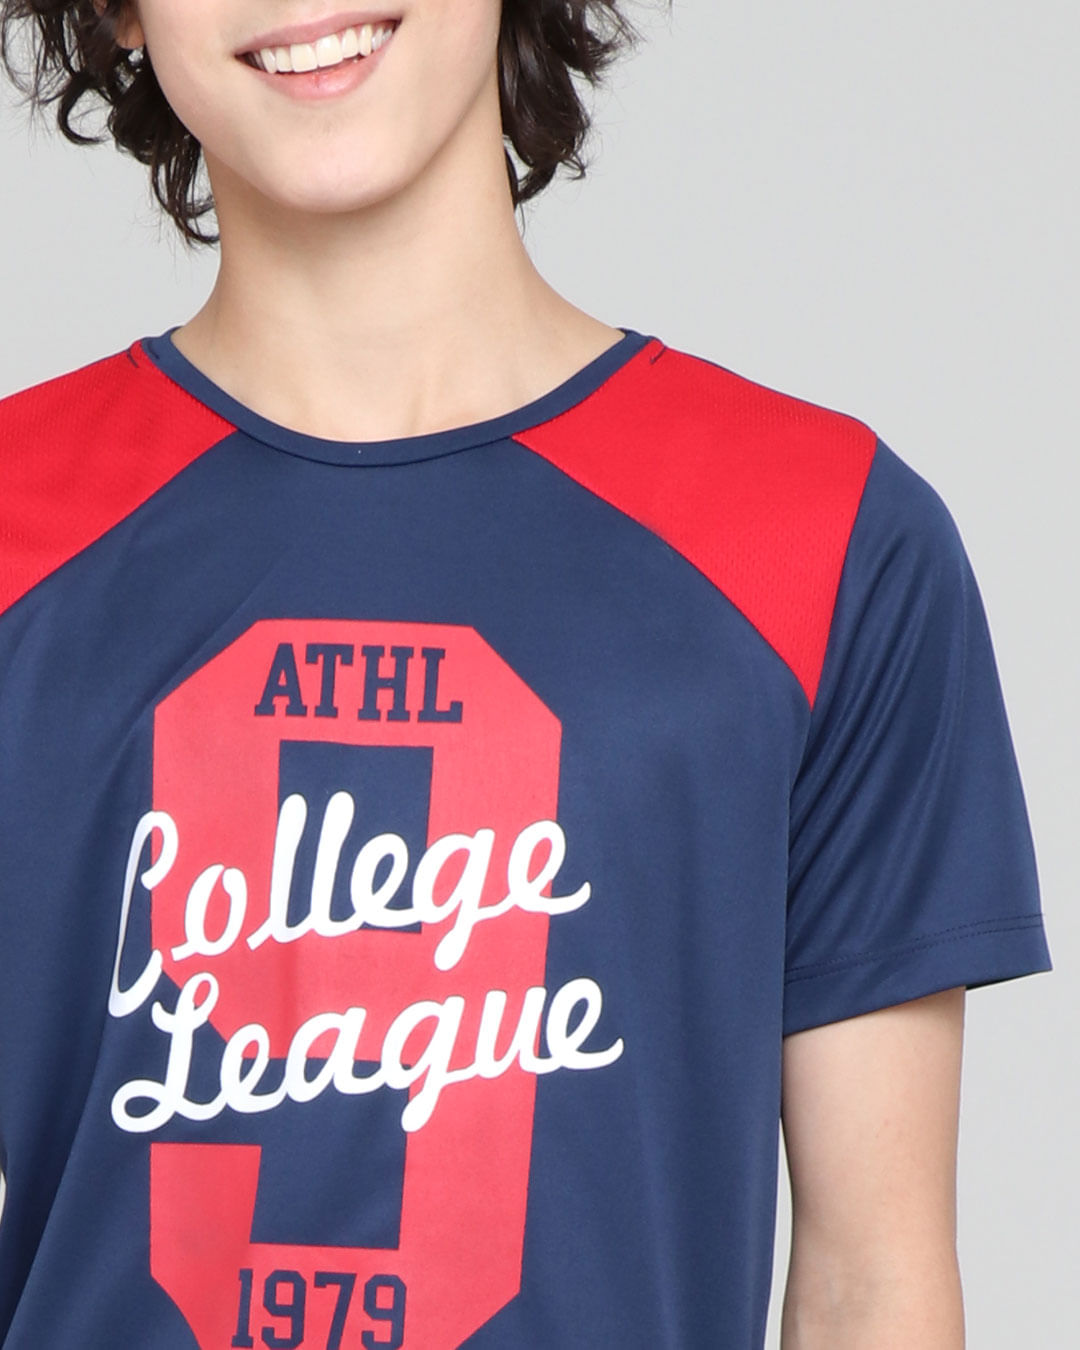 Camiseta-Juvenil-Esportiva-College-Marinho